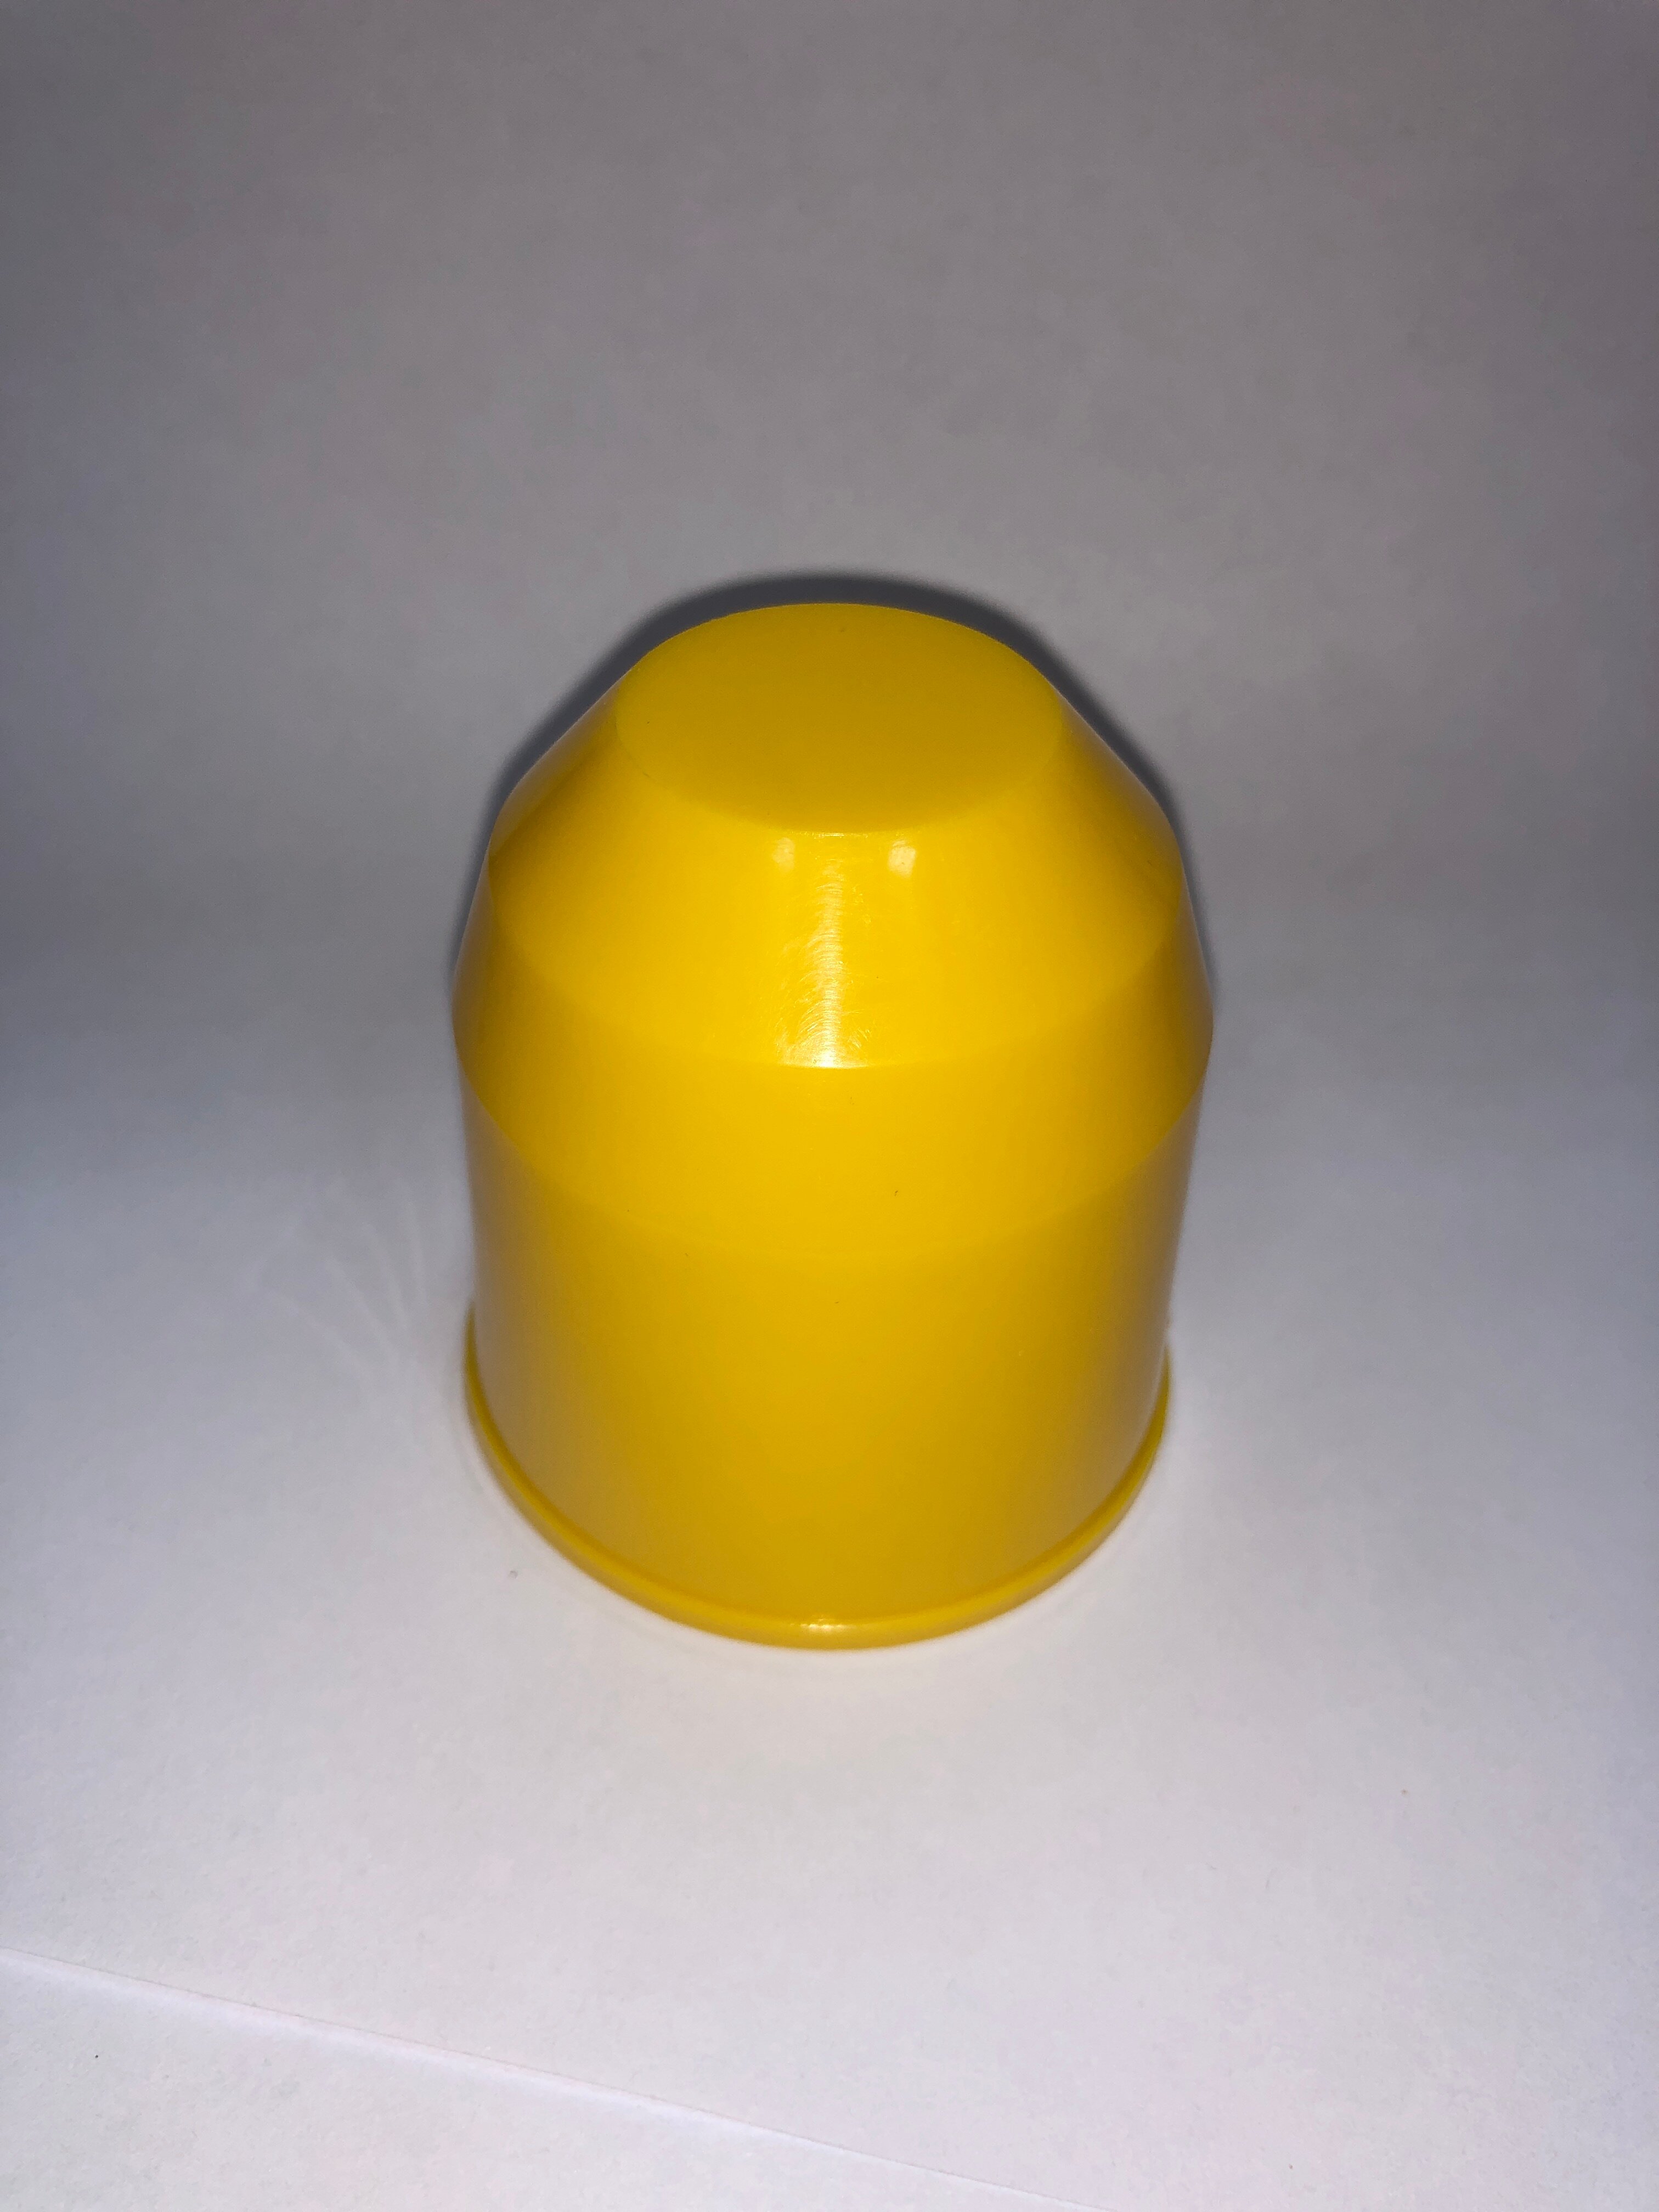 Колпачок на шар фаркопа без надписи, пластик, желтый